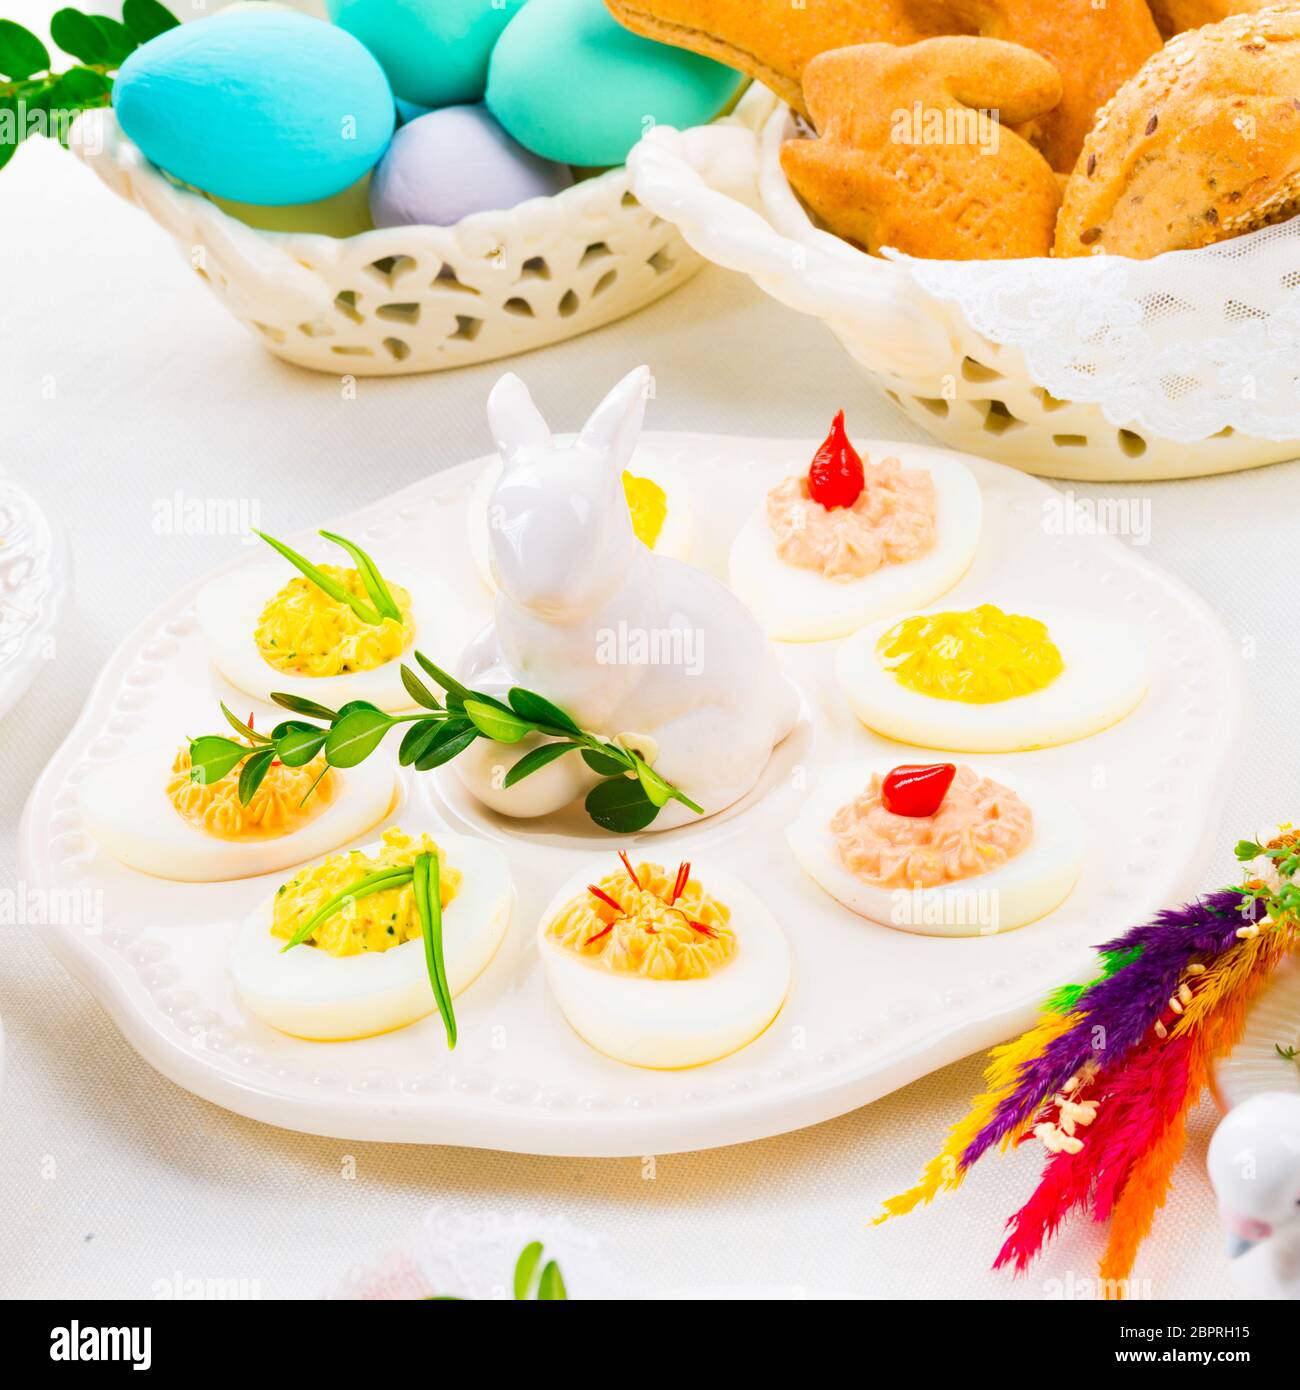 Une ambiance festive et colorée décoration de table de Pâques Banque D'Images